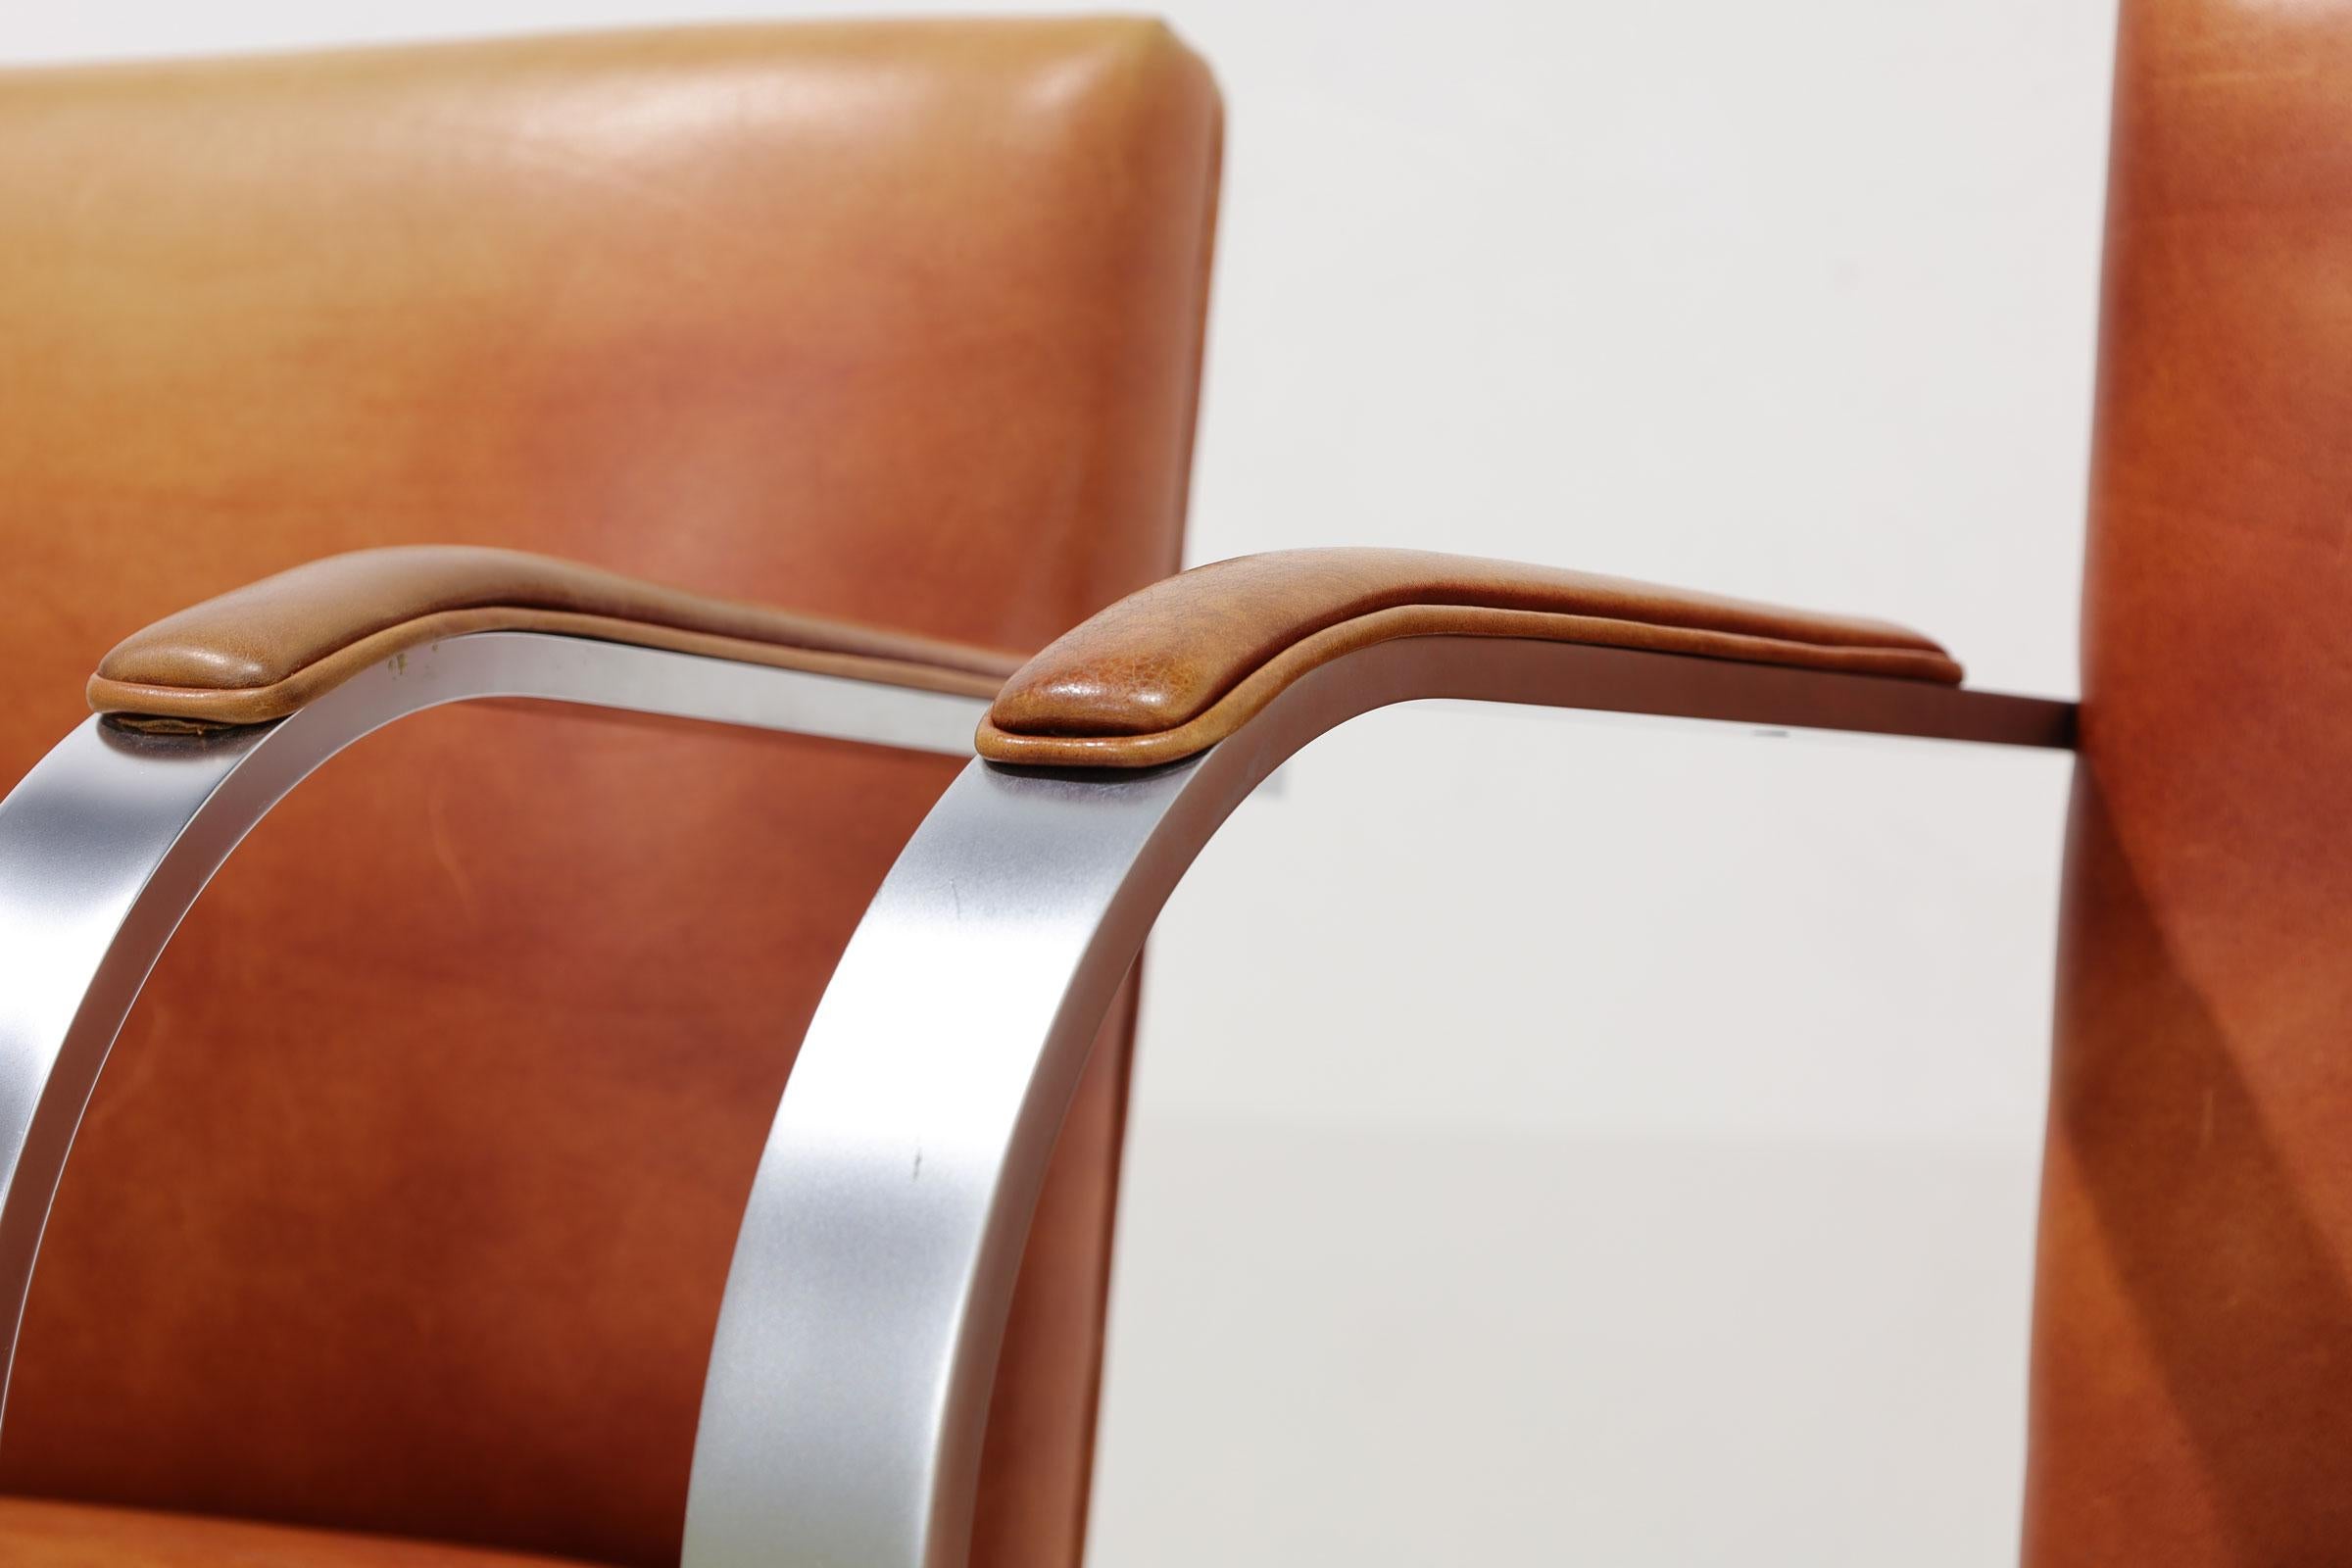 Wir haben bis zu 20 Brno-Stühle von Mies van der Rohe für Knoll. Sie sind mit strapazierfähigem Leder gepolstert und haben Arm-Pads. Der Rahmen ist aus gebürstetem Stahl. Die Stühle tragen den Stempel Knoll Studio.